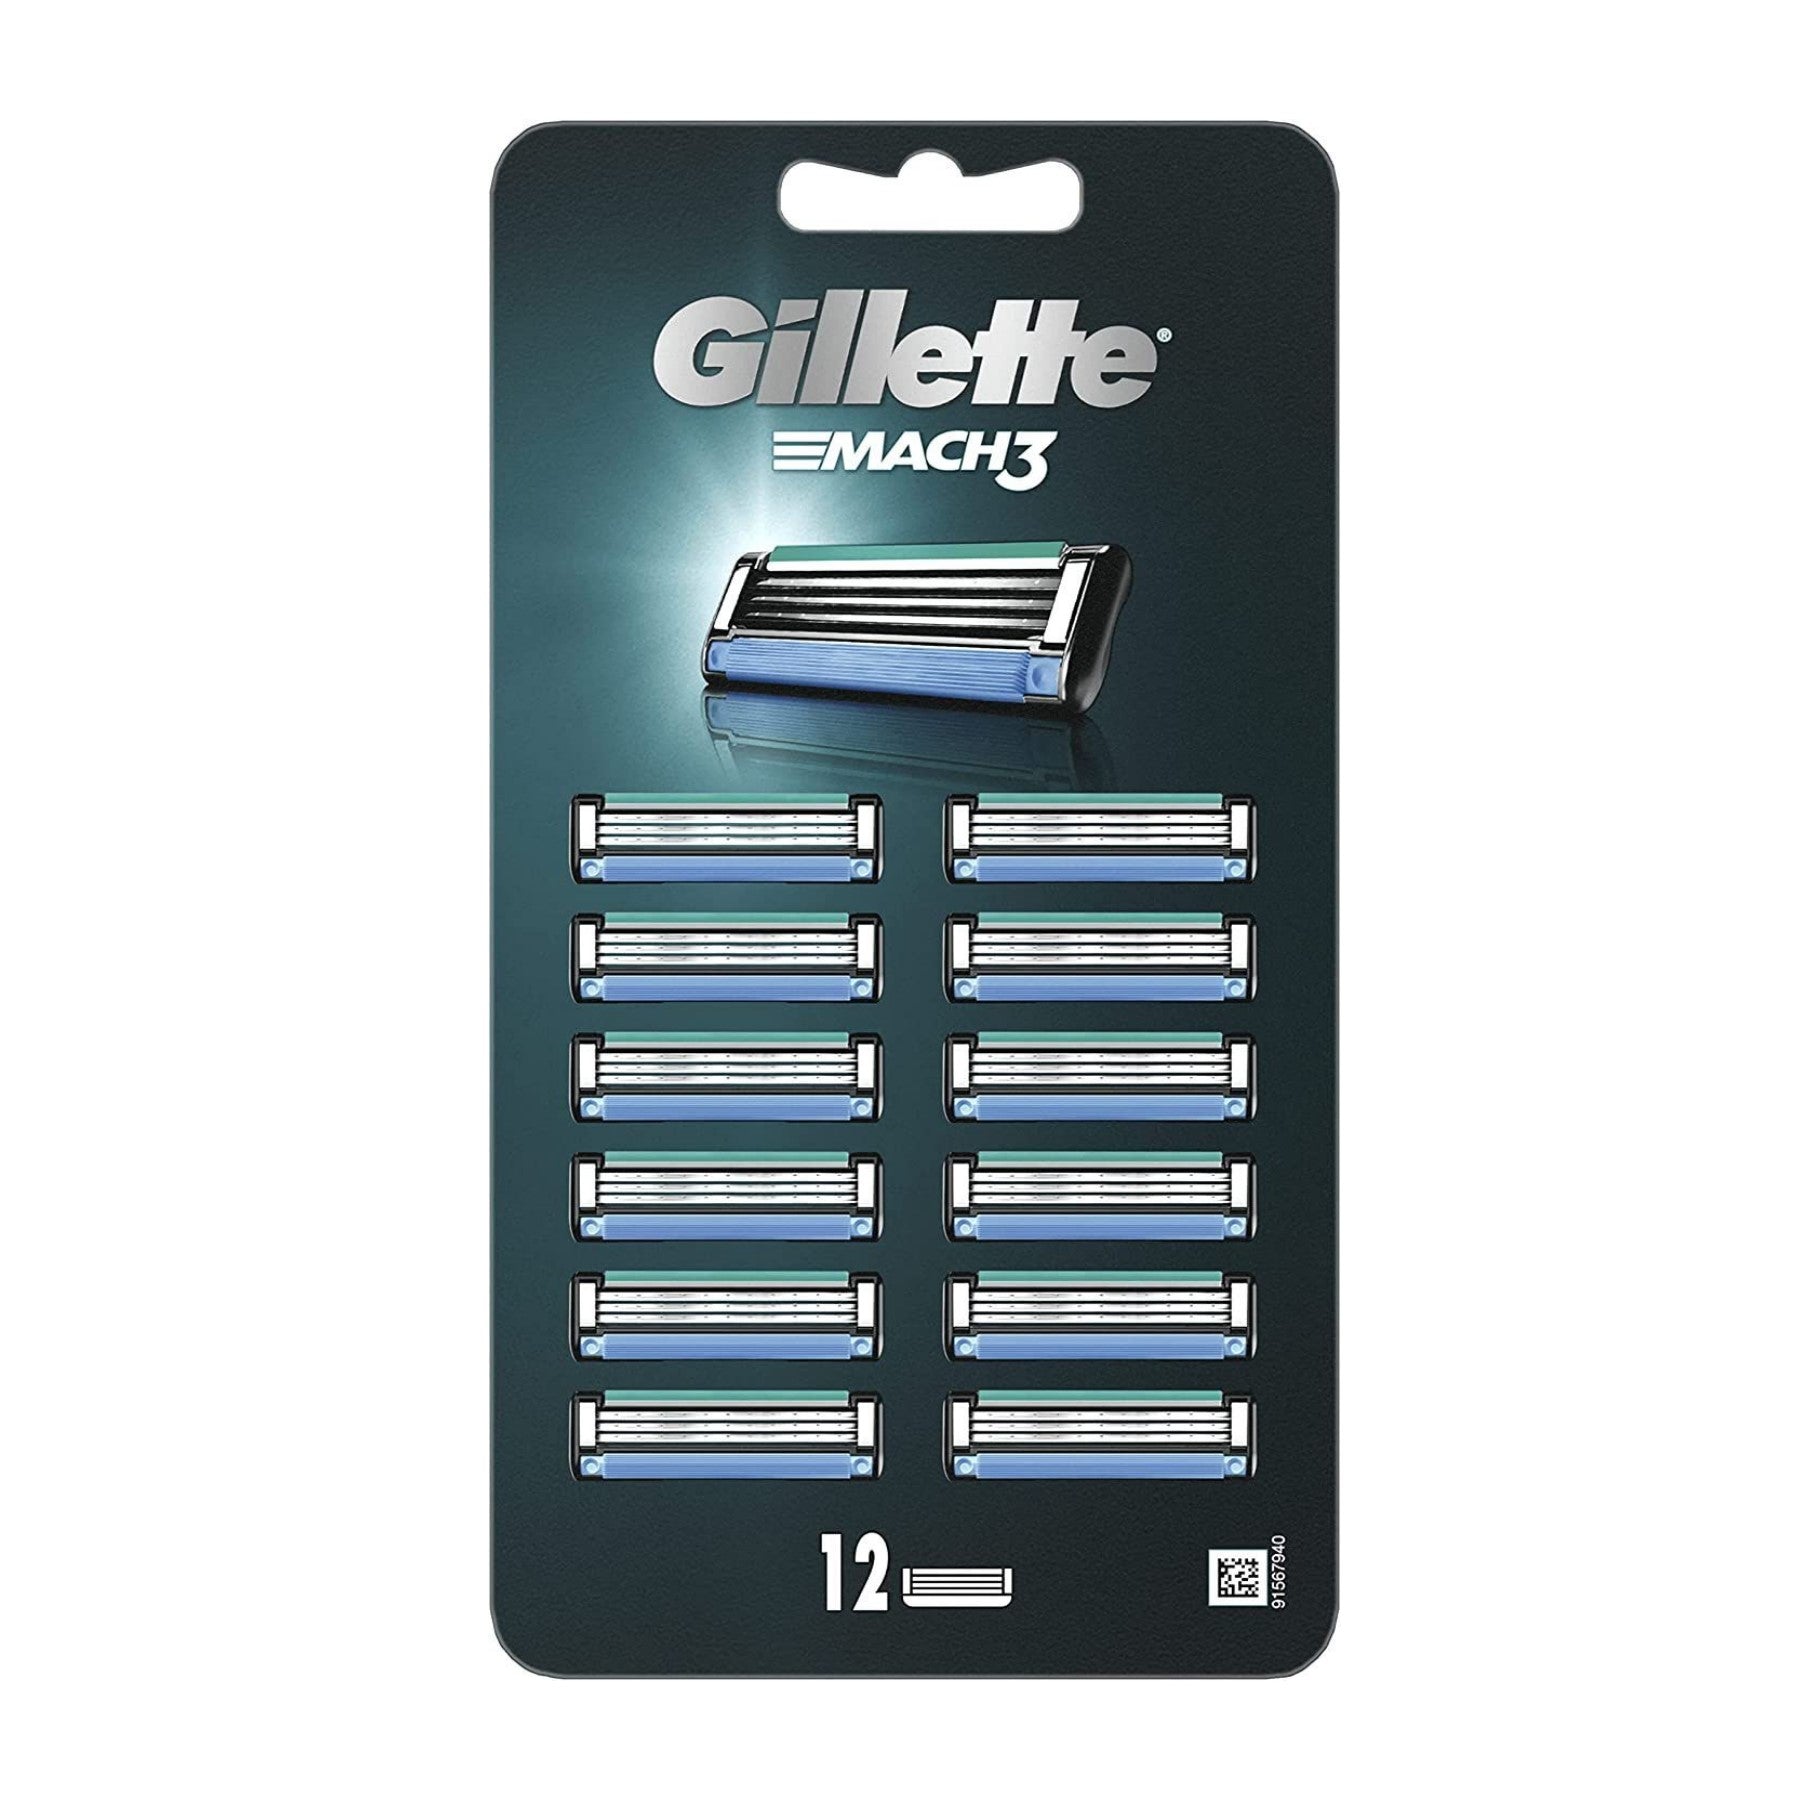 Gillette Mach3 scheermesje 12 stuks